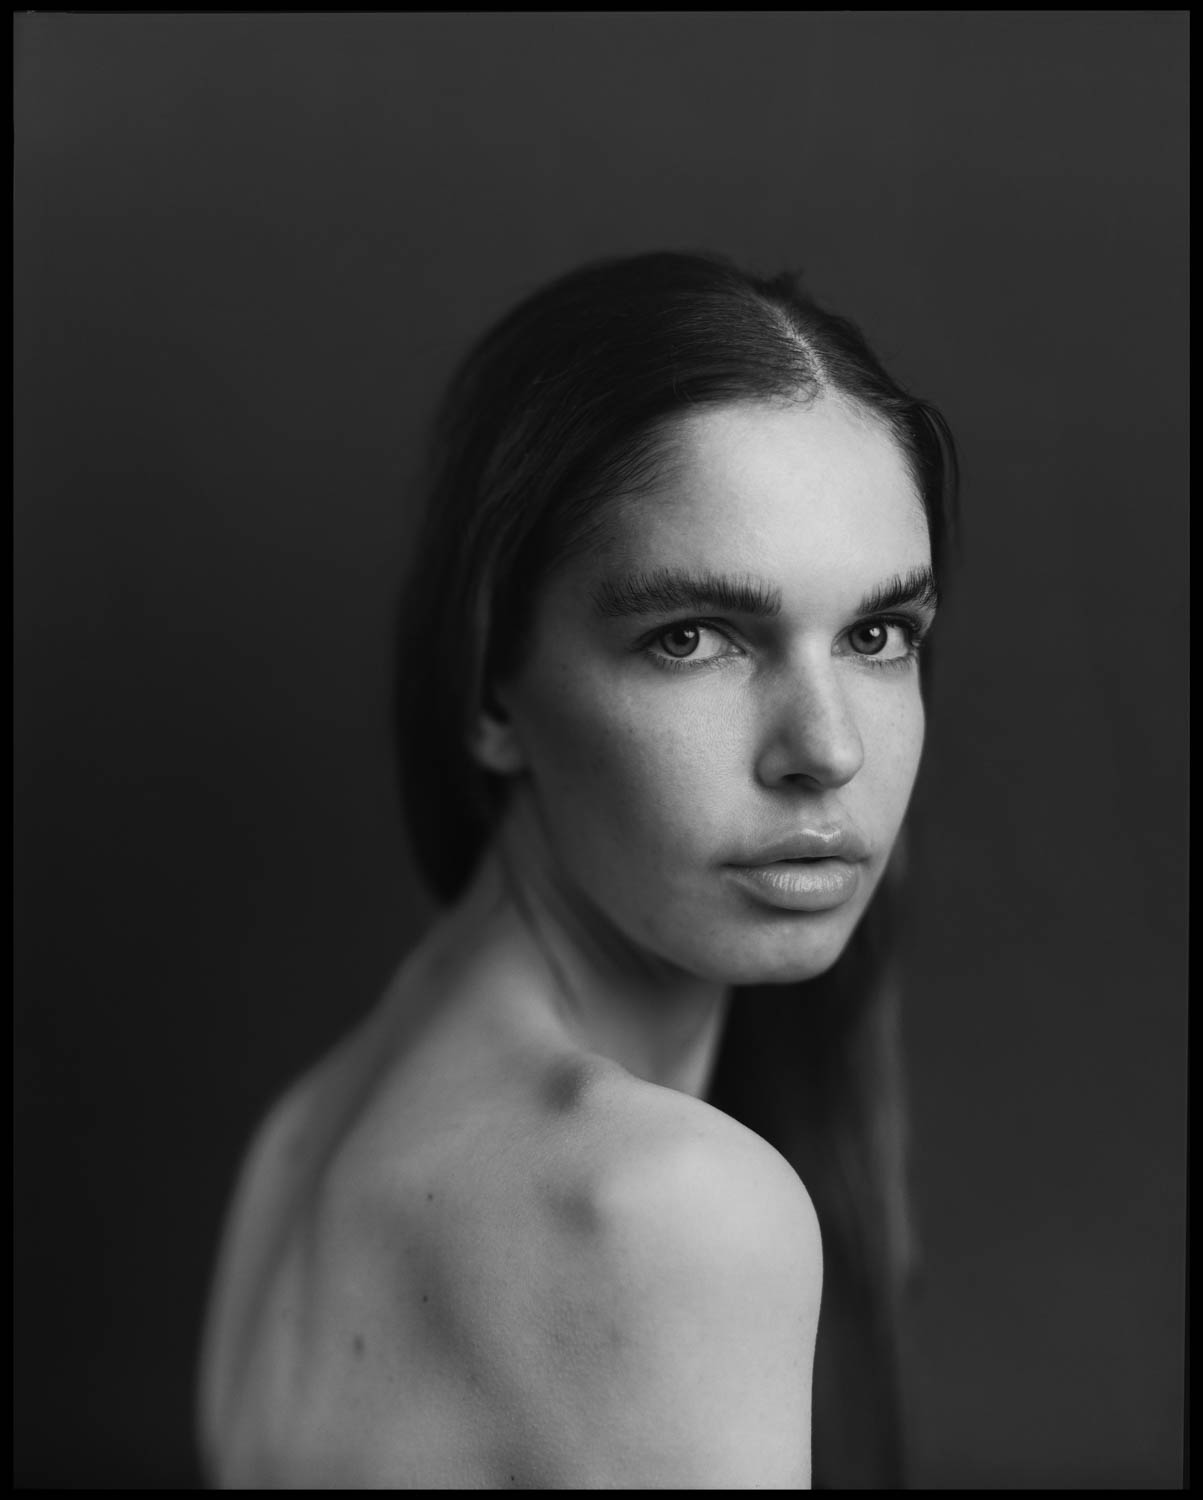 8x10 Inch Portrait mit Arca Swiss Kamera aufgenommen